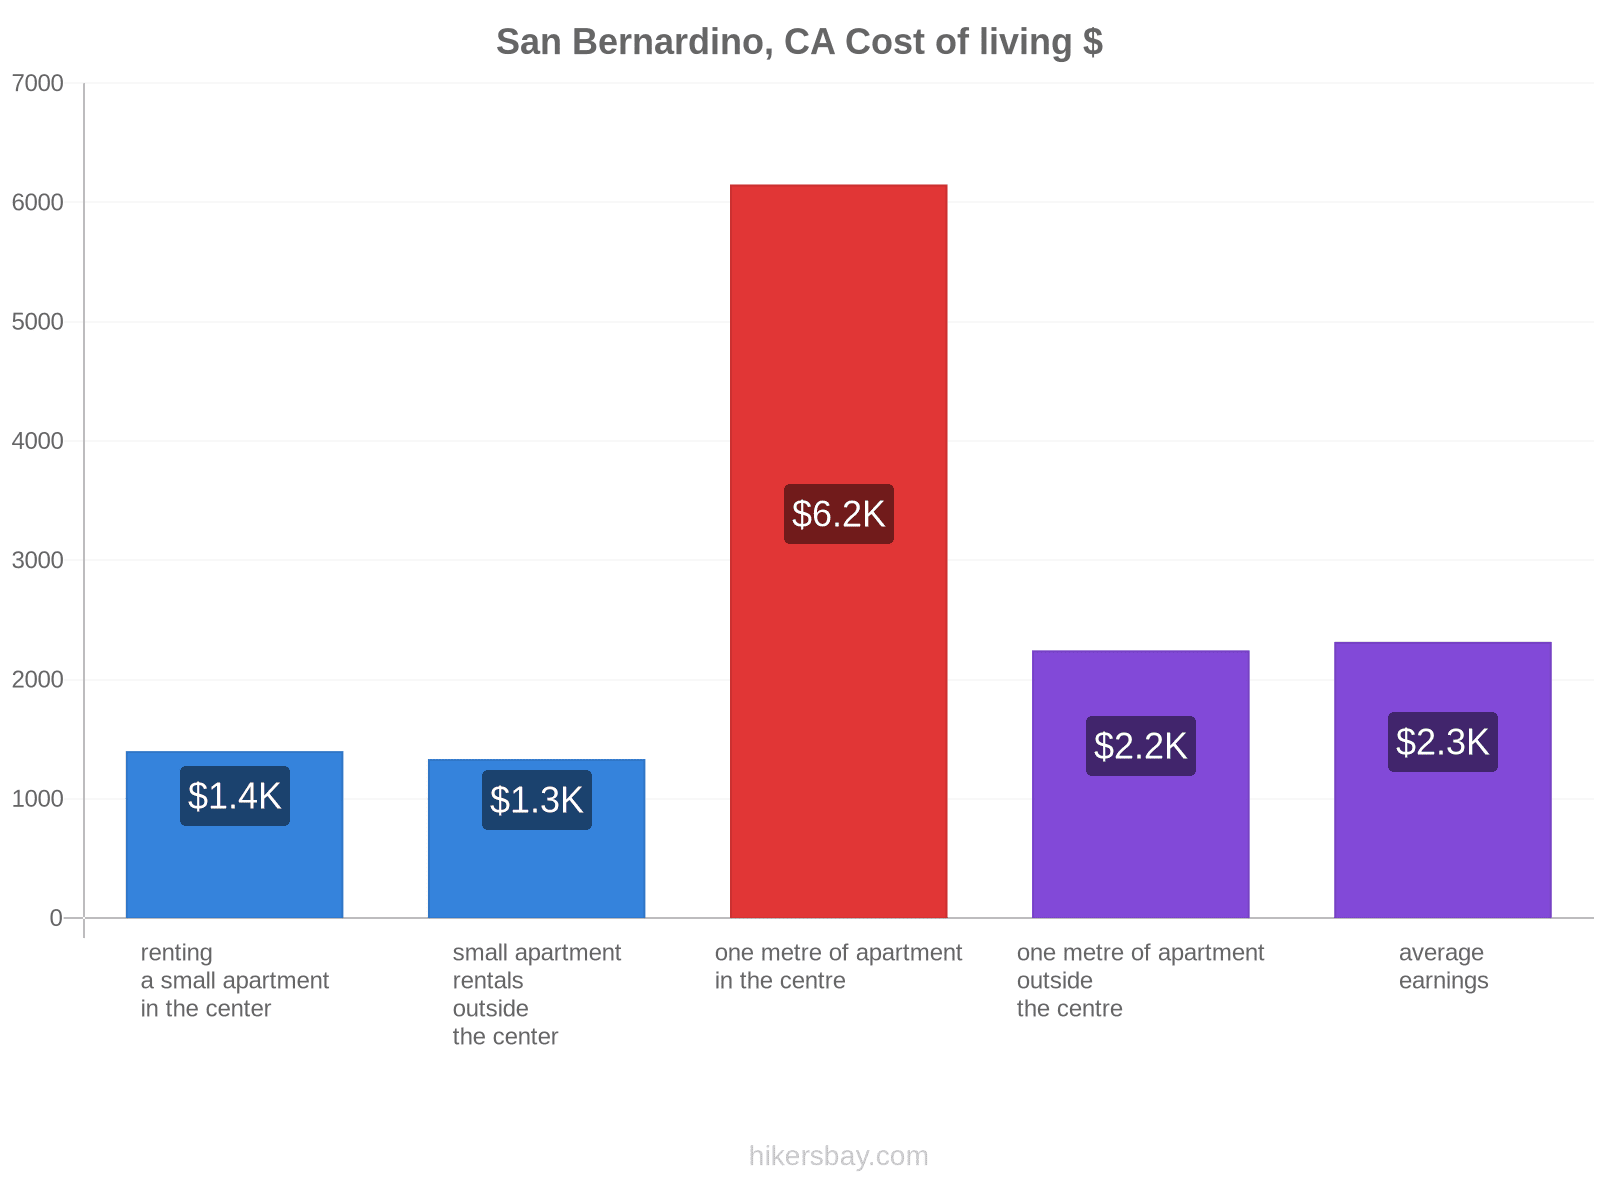 San Bernardino, CA cost of living hikersbay.com